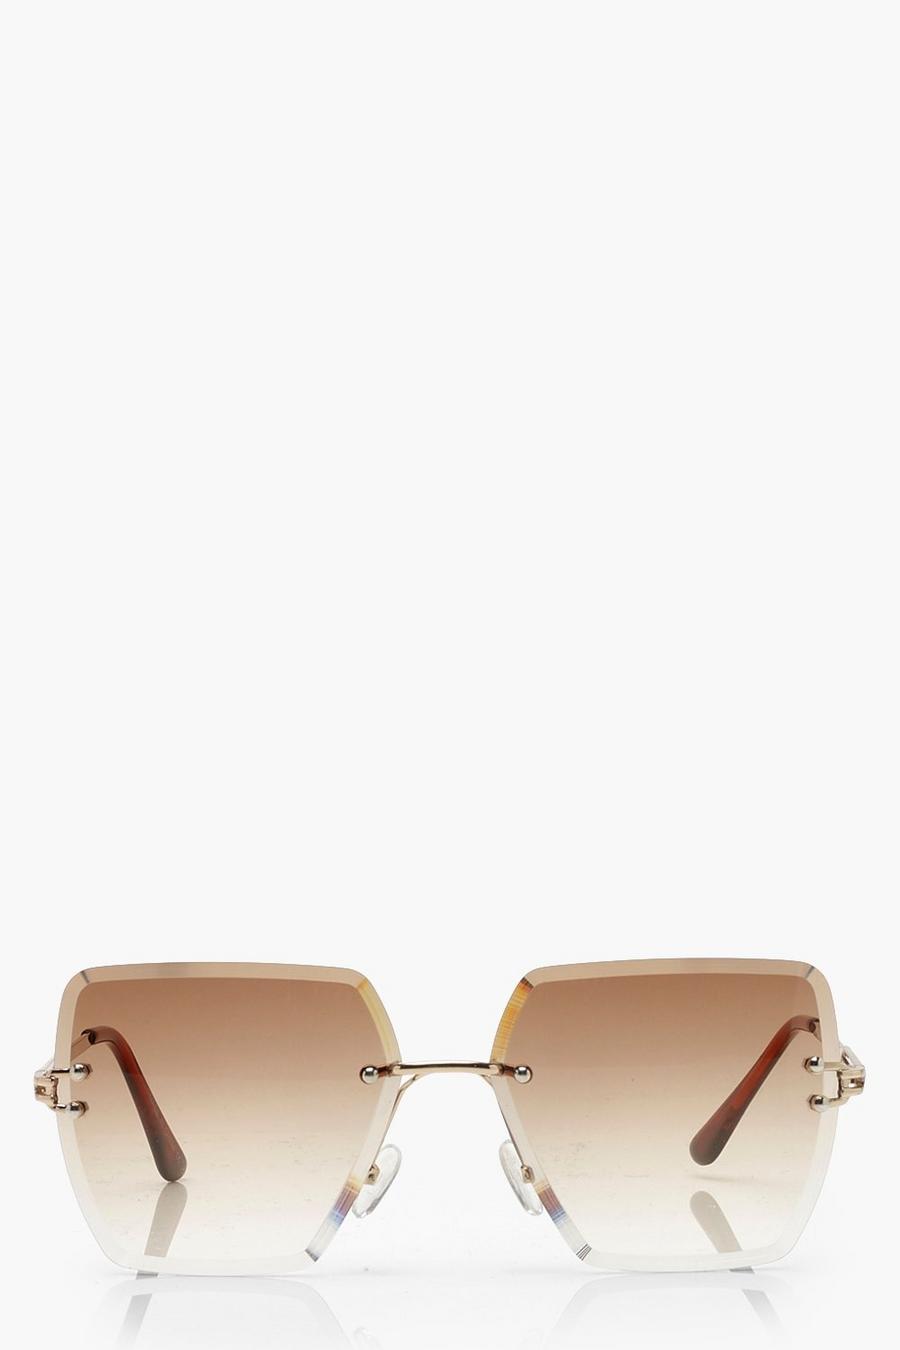 Brown brun Fyrkantiga båglösa solglasögon i vintagestil